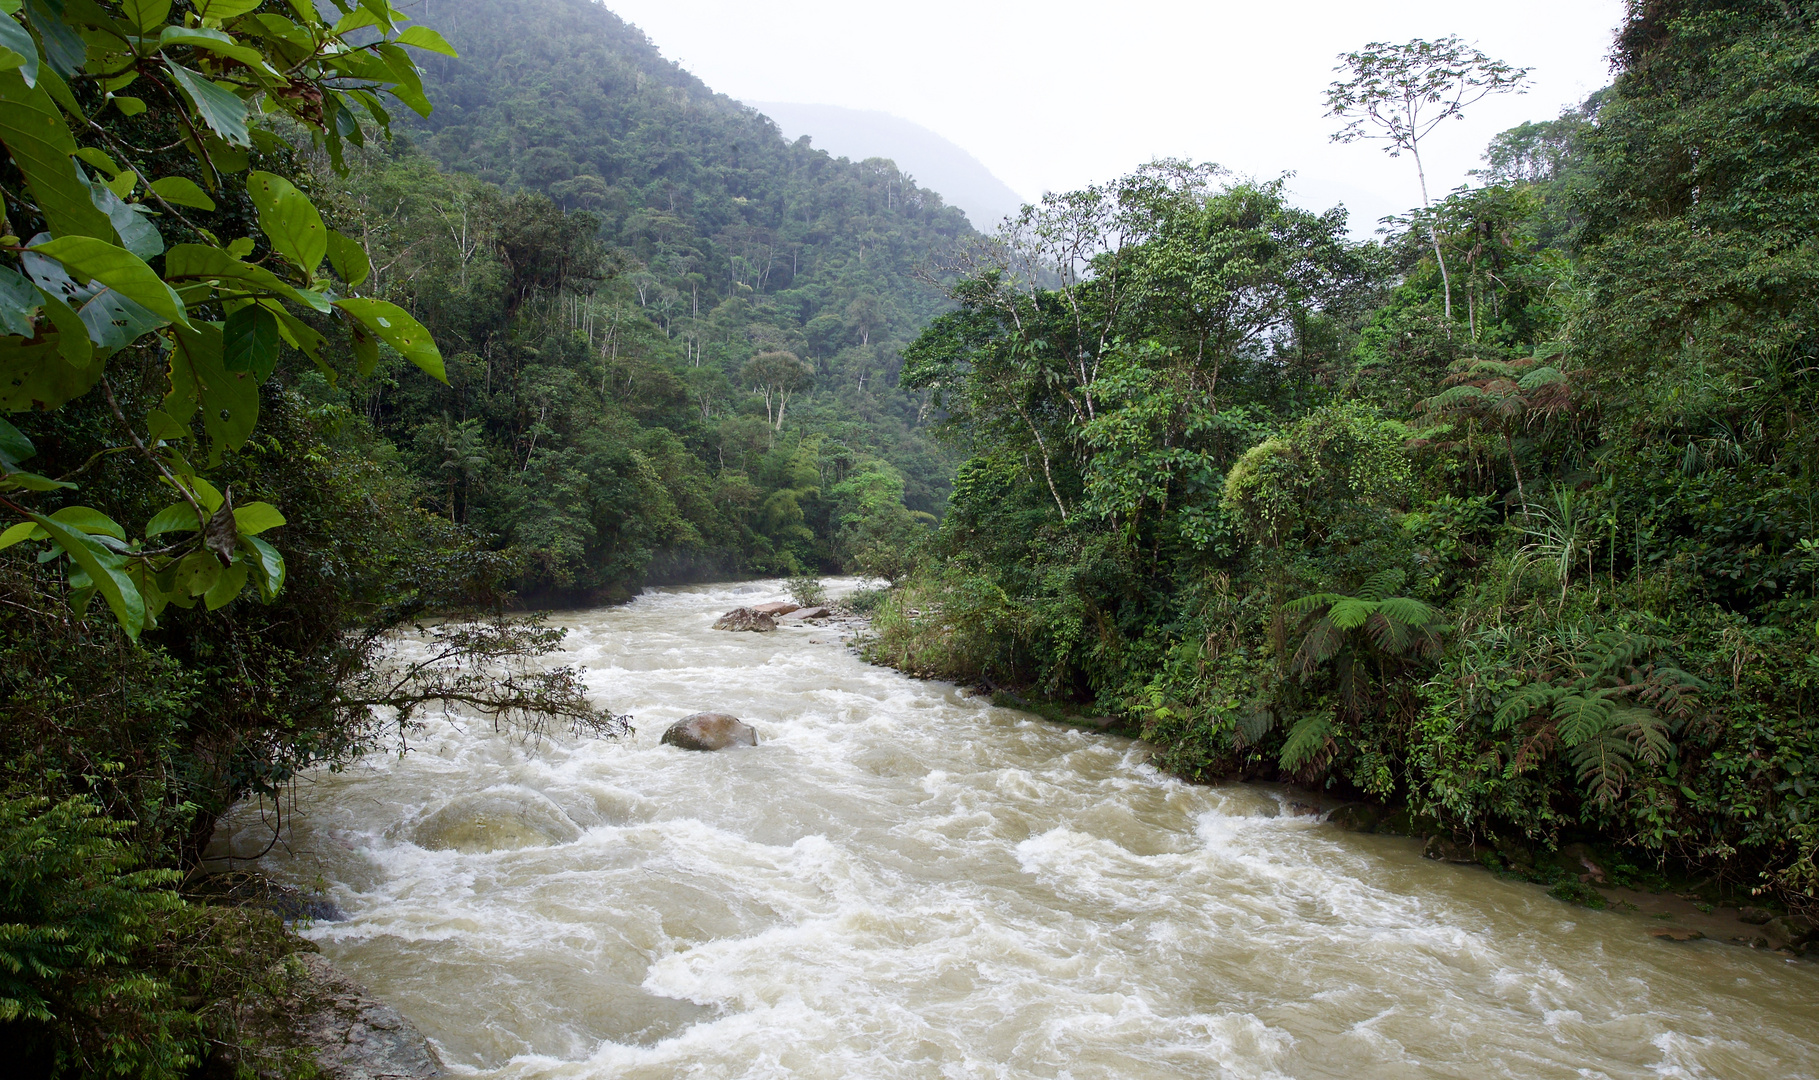 Reißender Fluß im Bergregenwald von Ecuador